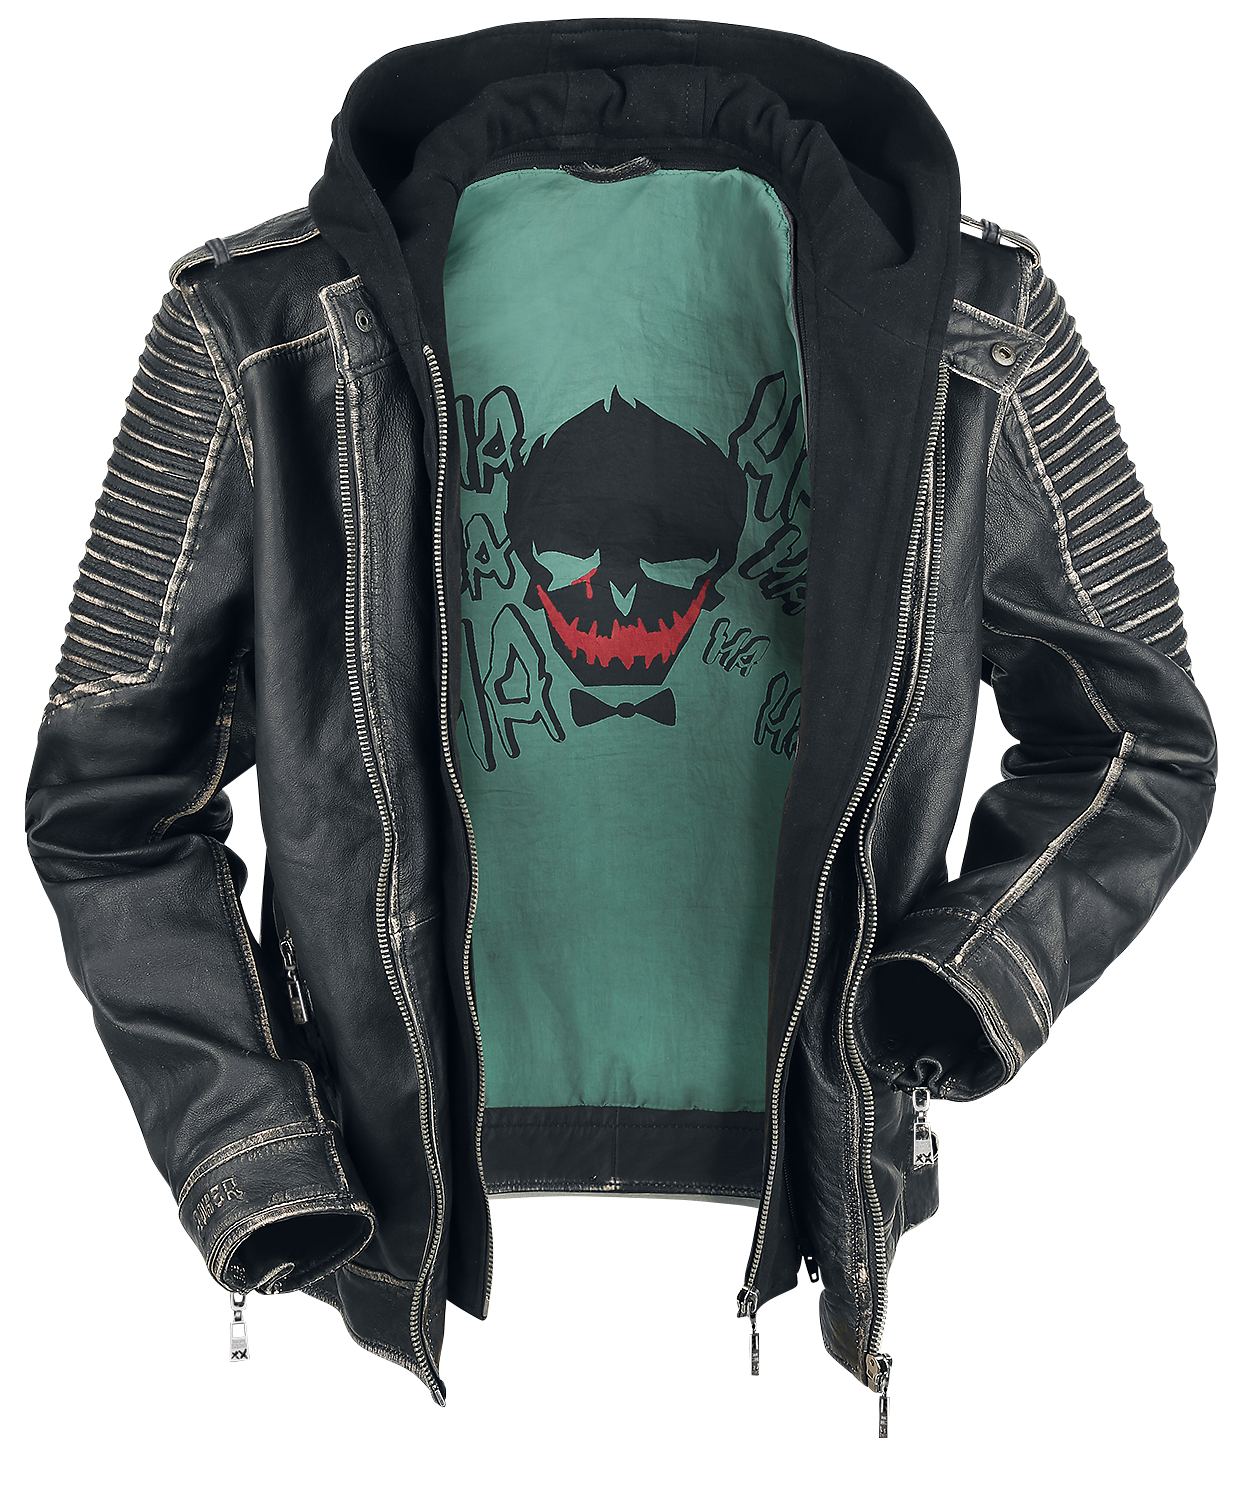 Suicide Squad - DC Comics Lederjacke - The Joker - S bis 3XL - für Männer - Größe M - schwarz  - EMP exklusives Merchandise!